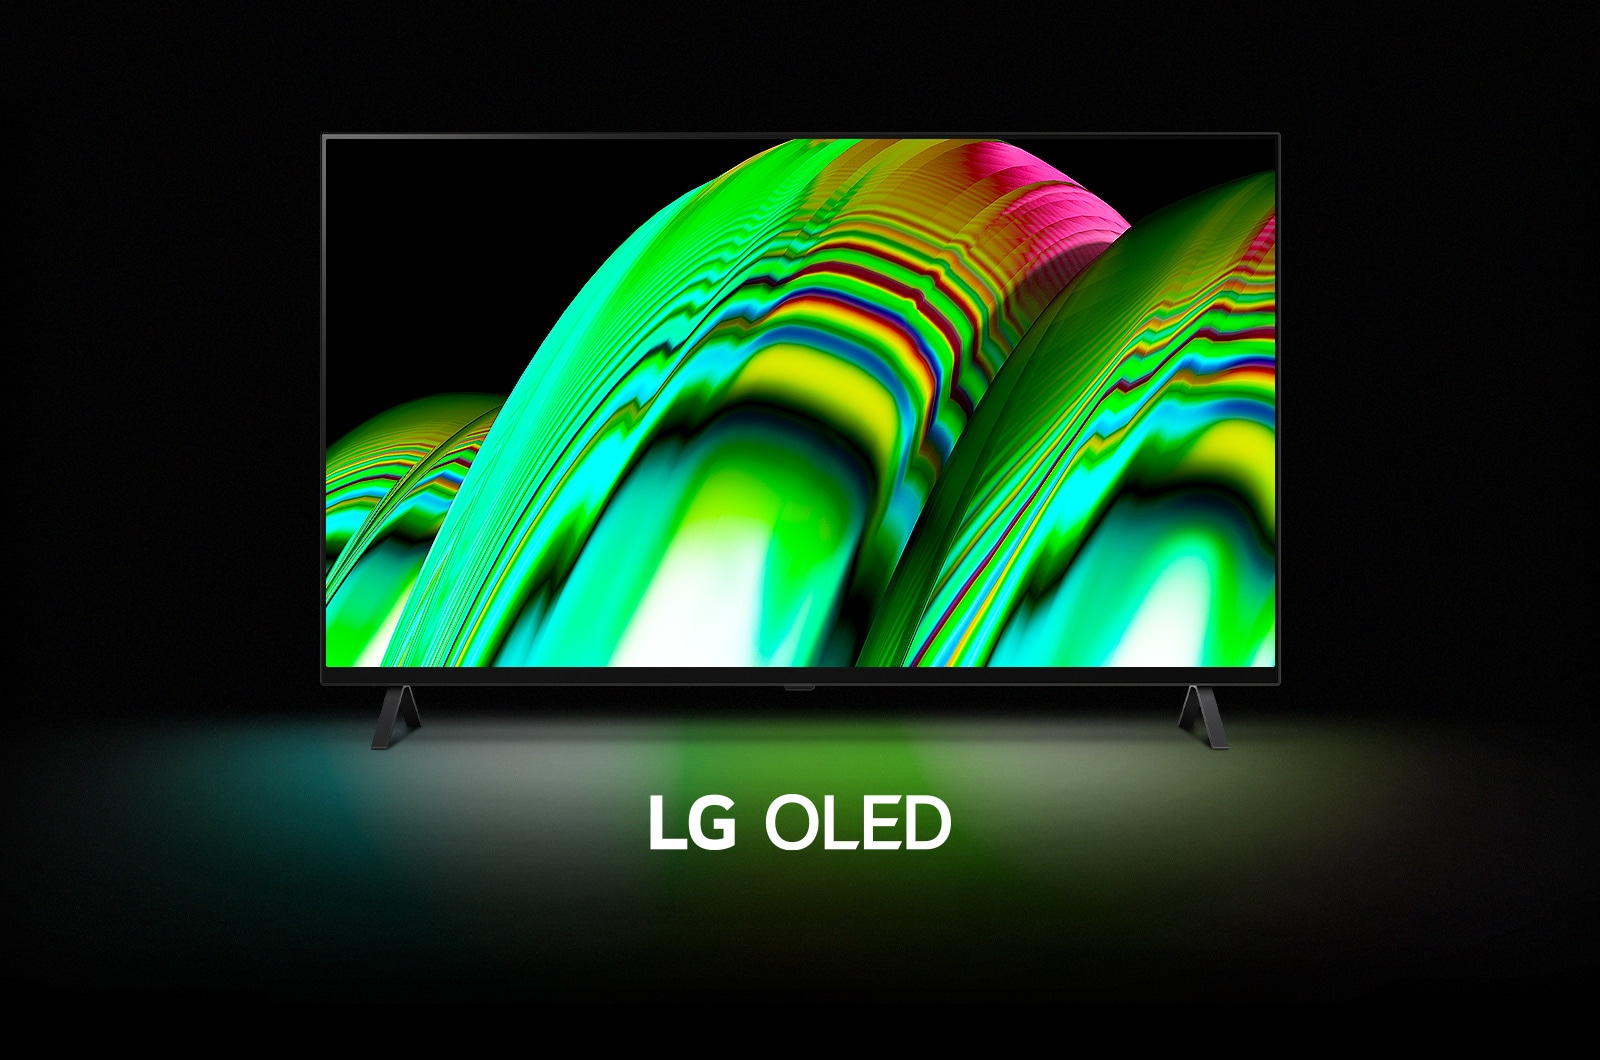 Un motif abstrait représentant des vagues vertes remplit l’écran, puis le zoom se fait progressivement pour révéler le LG OLED A2. L’écran devient noir, puis affiche à nouveau le motif de vagues avec les mots « LG OLED » en dessous.